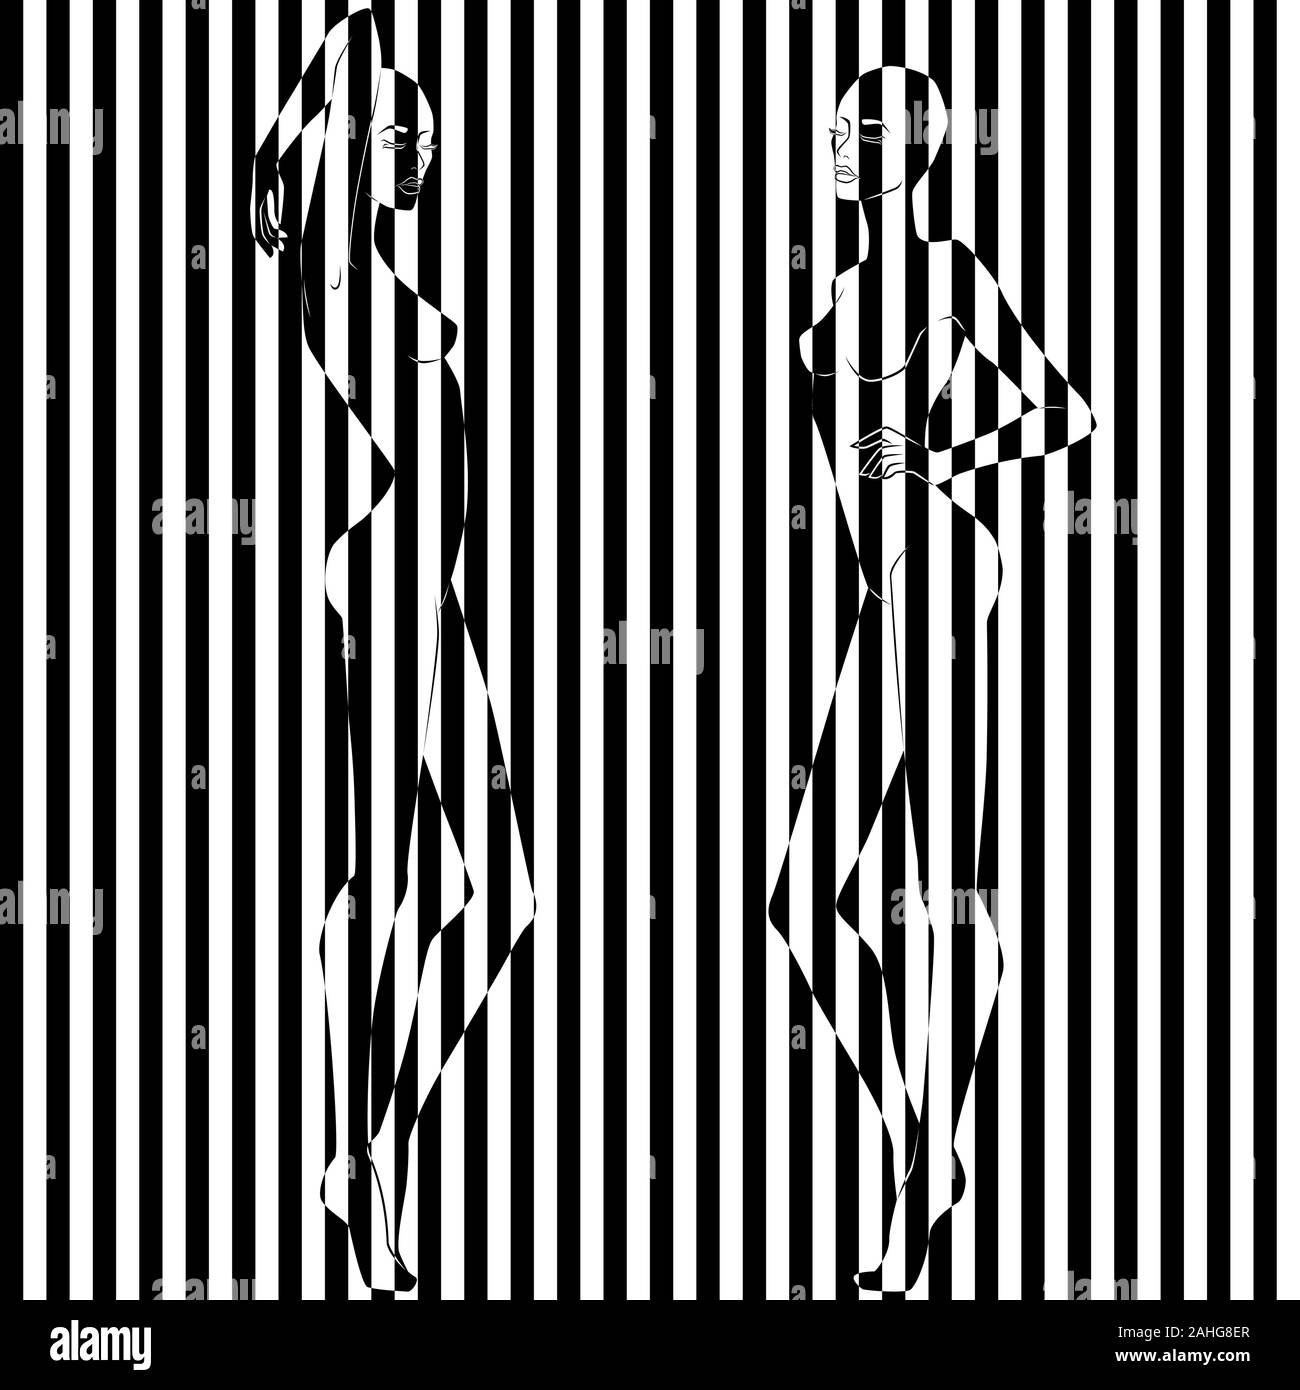 Zusammenfassung von zwei hübschen Frauen in Abbildung in schwarze und weiße Streifen geteilt, Pseudo-3D-Optik, negative und positive konzeptionelle Express Stock Vektor